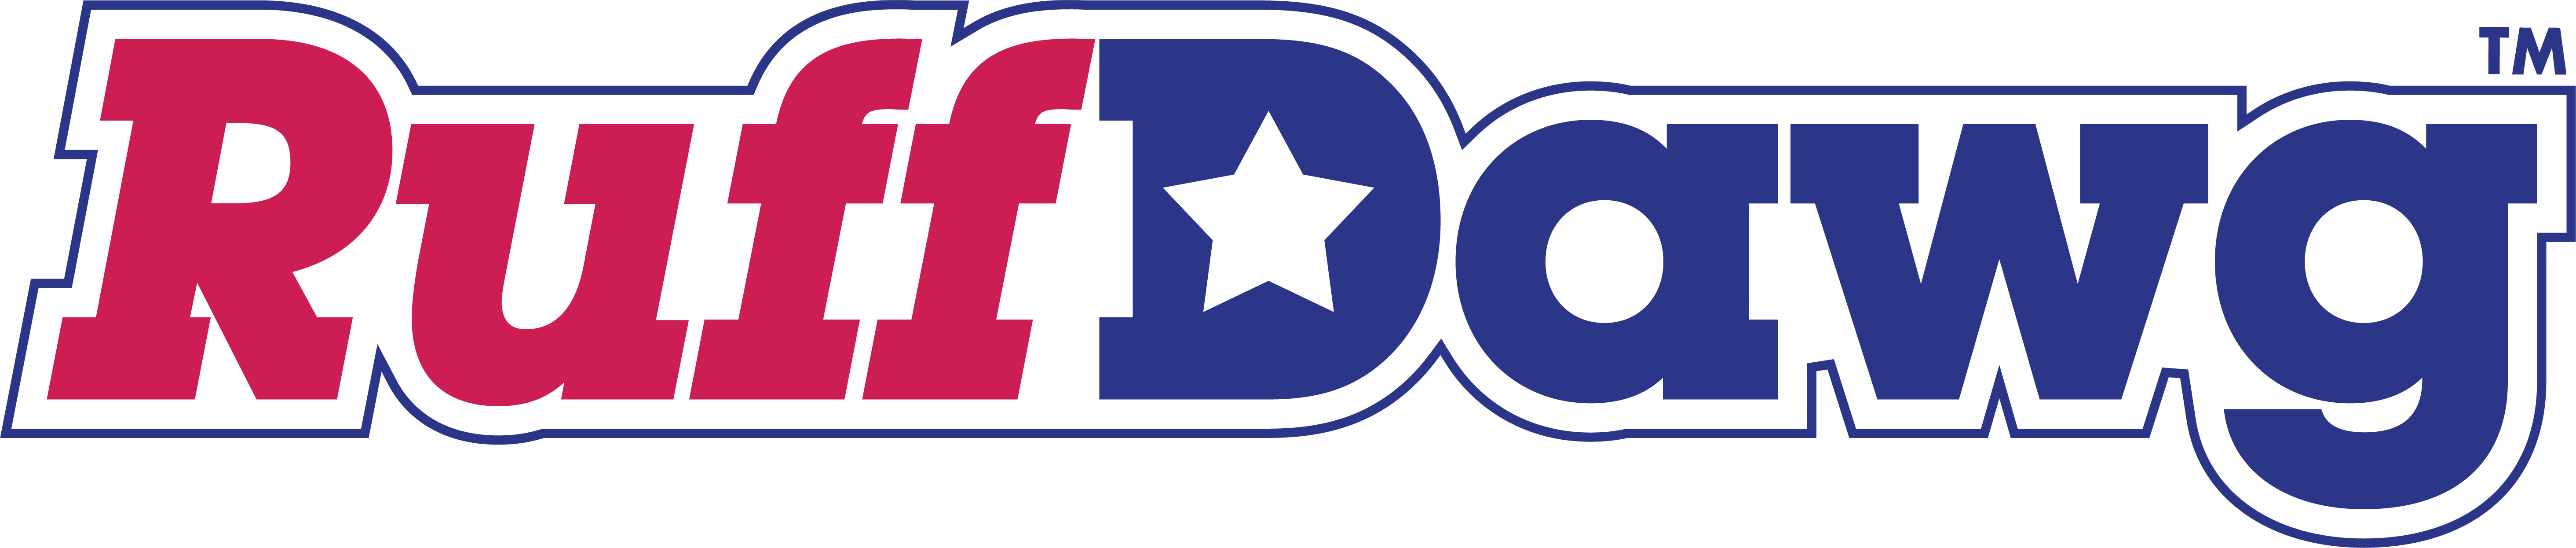 Ruff Dawg Logo